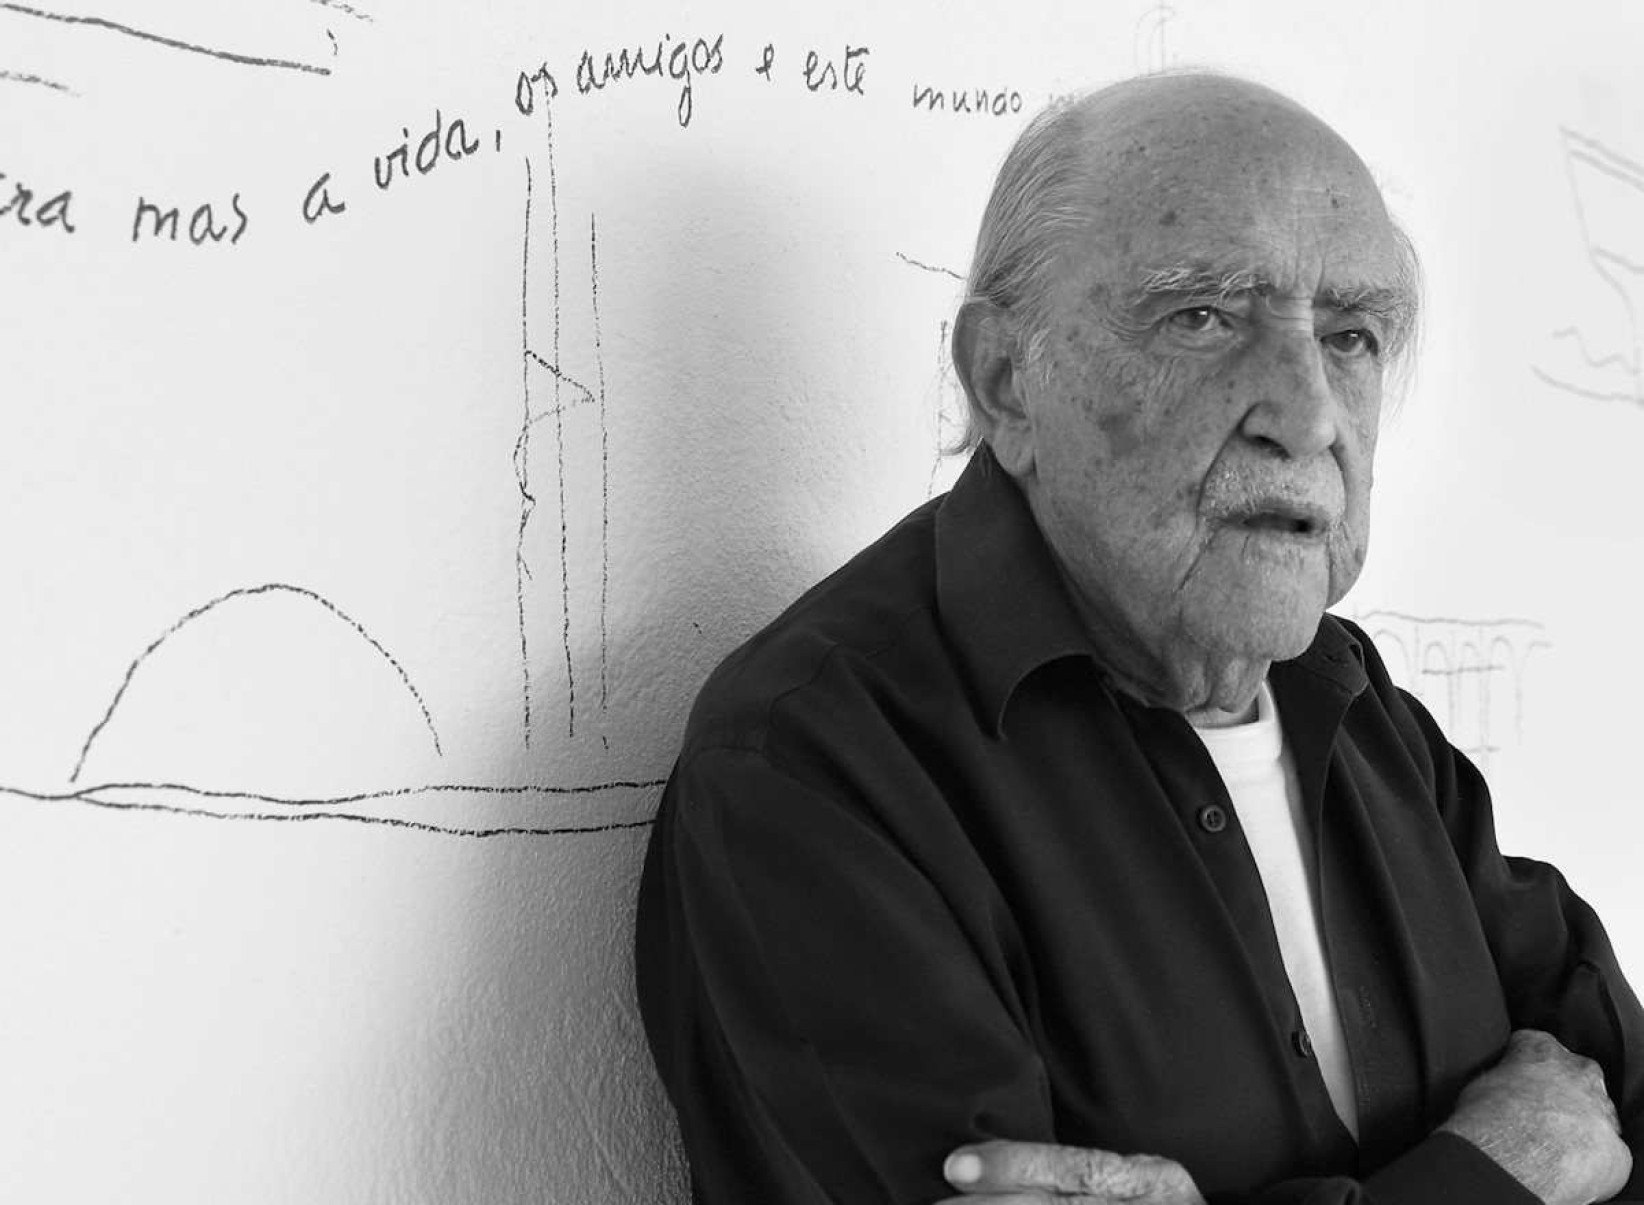 Galeria em São Paulo apresenta obras de Niemeyer da Brasília de 1964